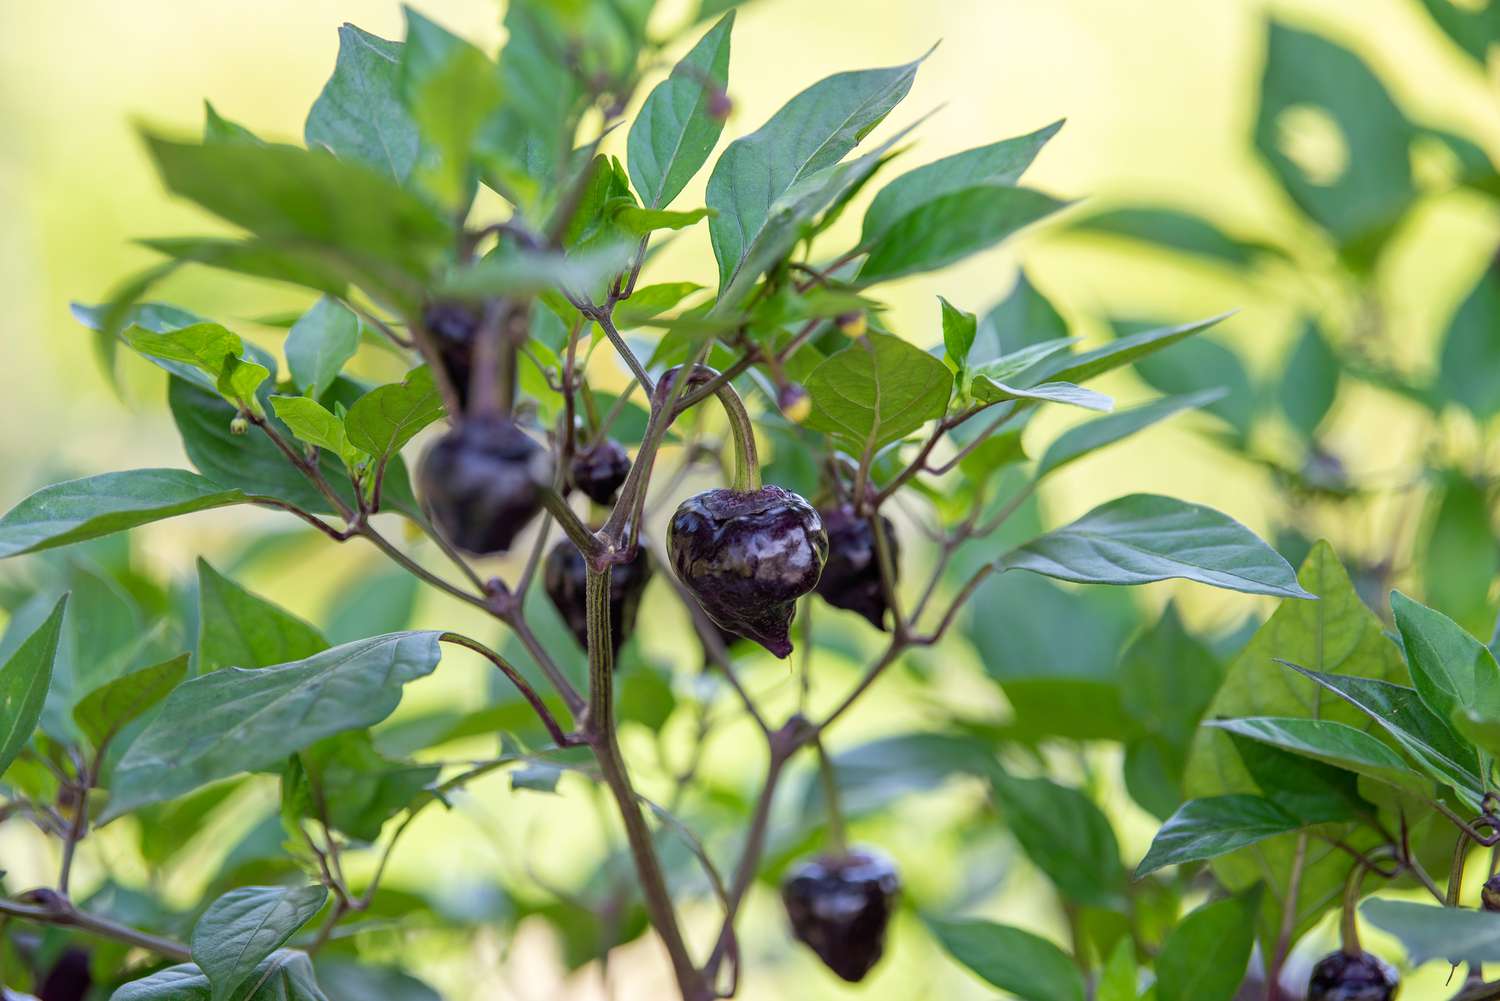 Planta ornamental de pimiento ramas con pimientos redondeados de color morado intenso colgando